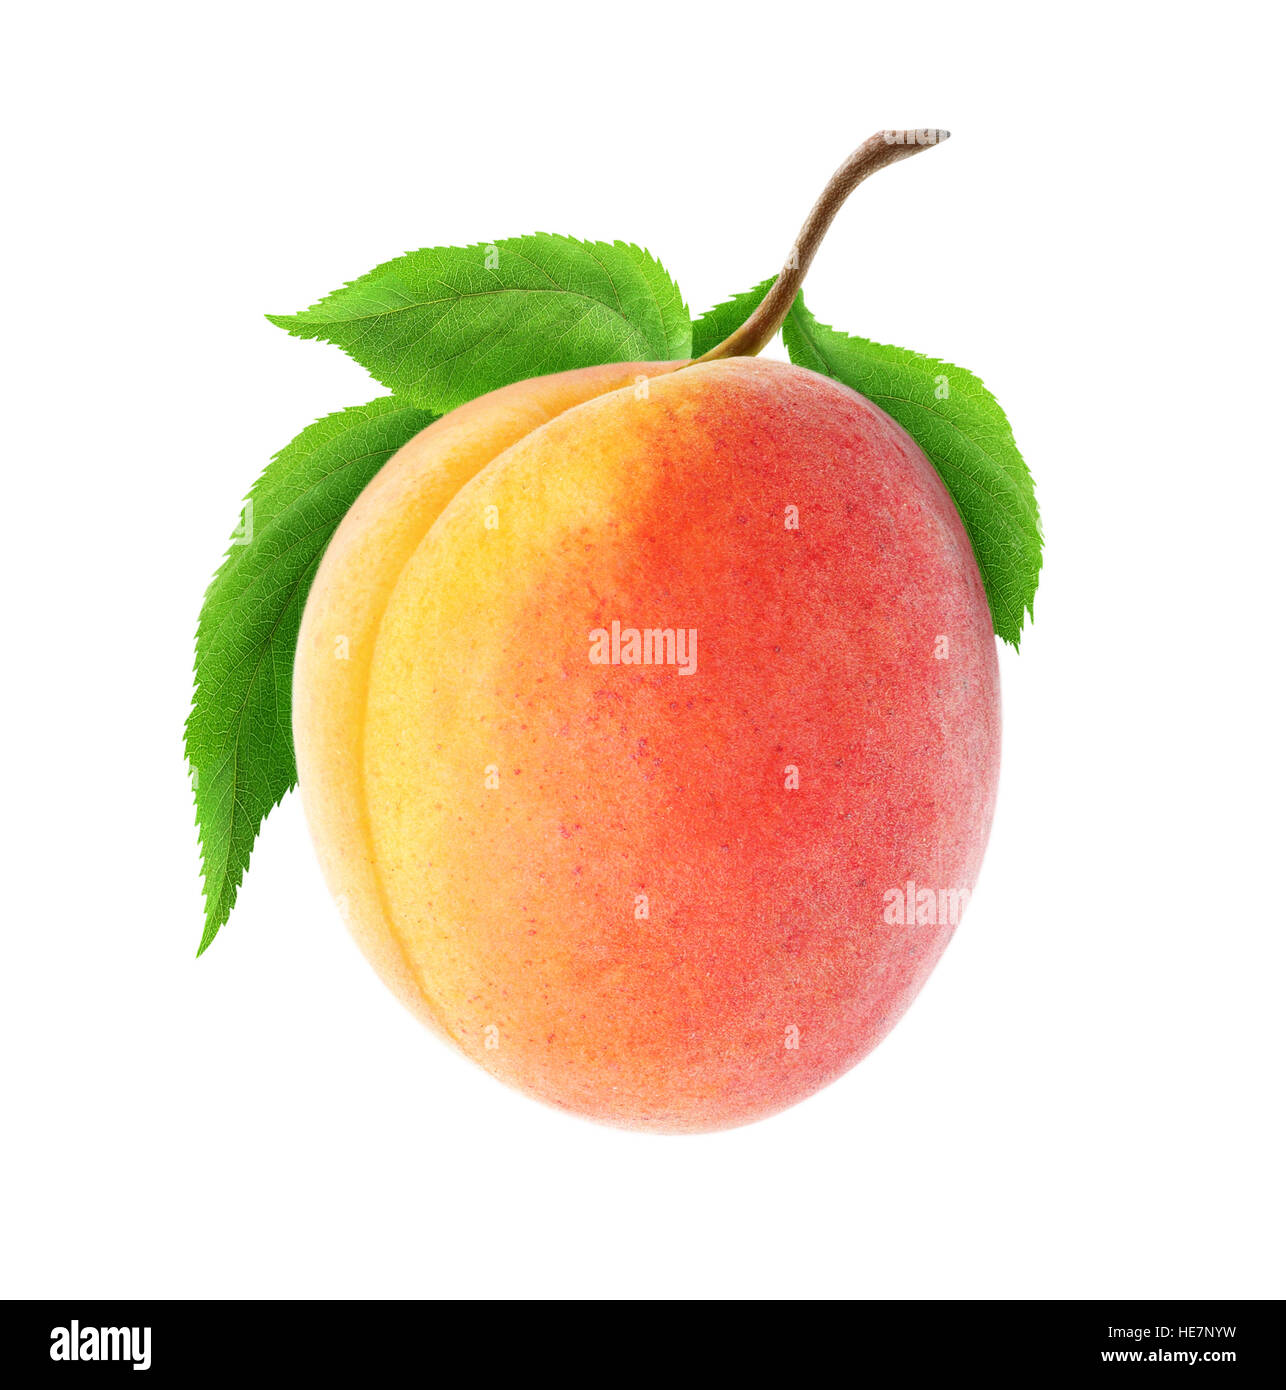 Abricot isolés. Un fruit abricot frais sur une branche avec des feuilles isolées sur fond blanc avec clipping path Banque D'Images